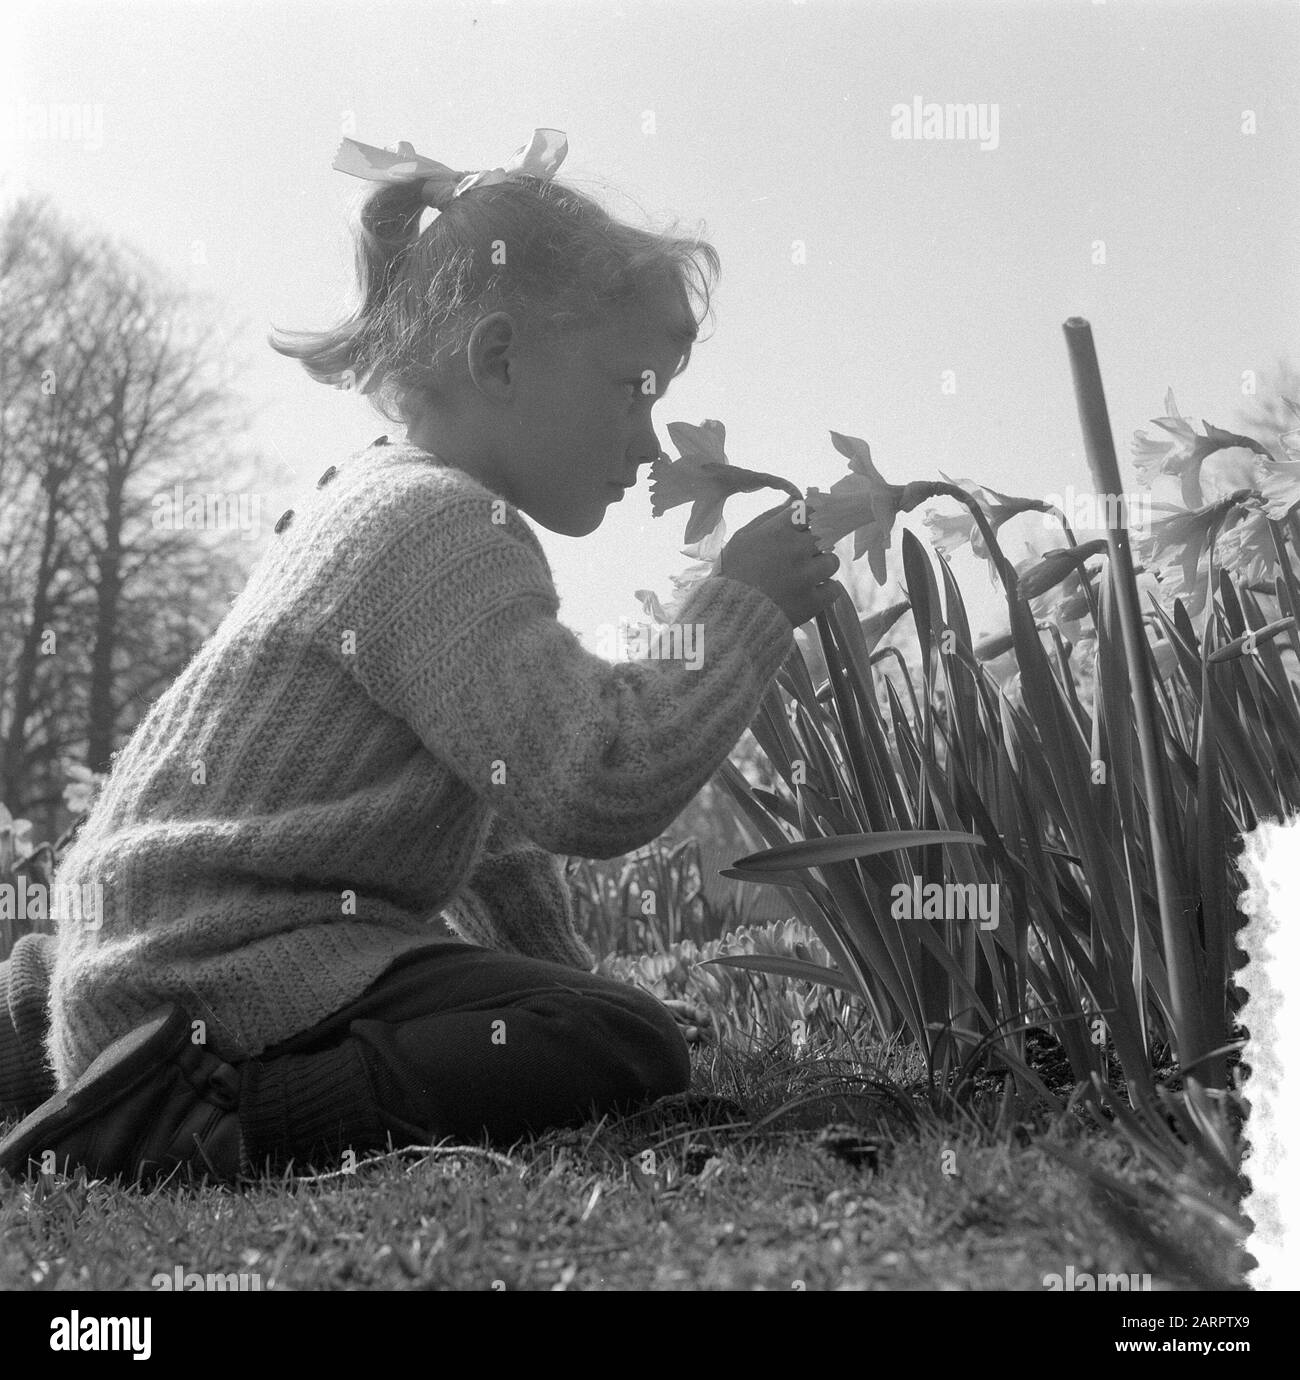 Children in daffodil fields in Keukenhof in Lisse Date: March 12, 1957 Location: Lisse Keywords: flowers, children, parks Institution name: Keukenhof Stock Photo